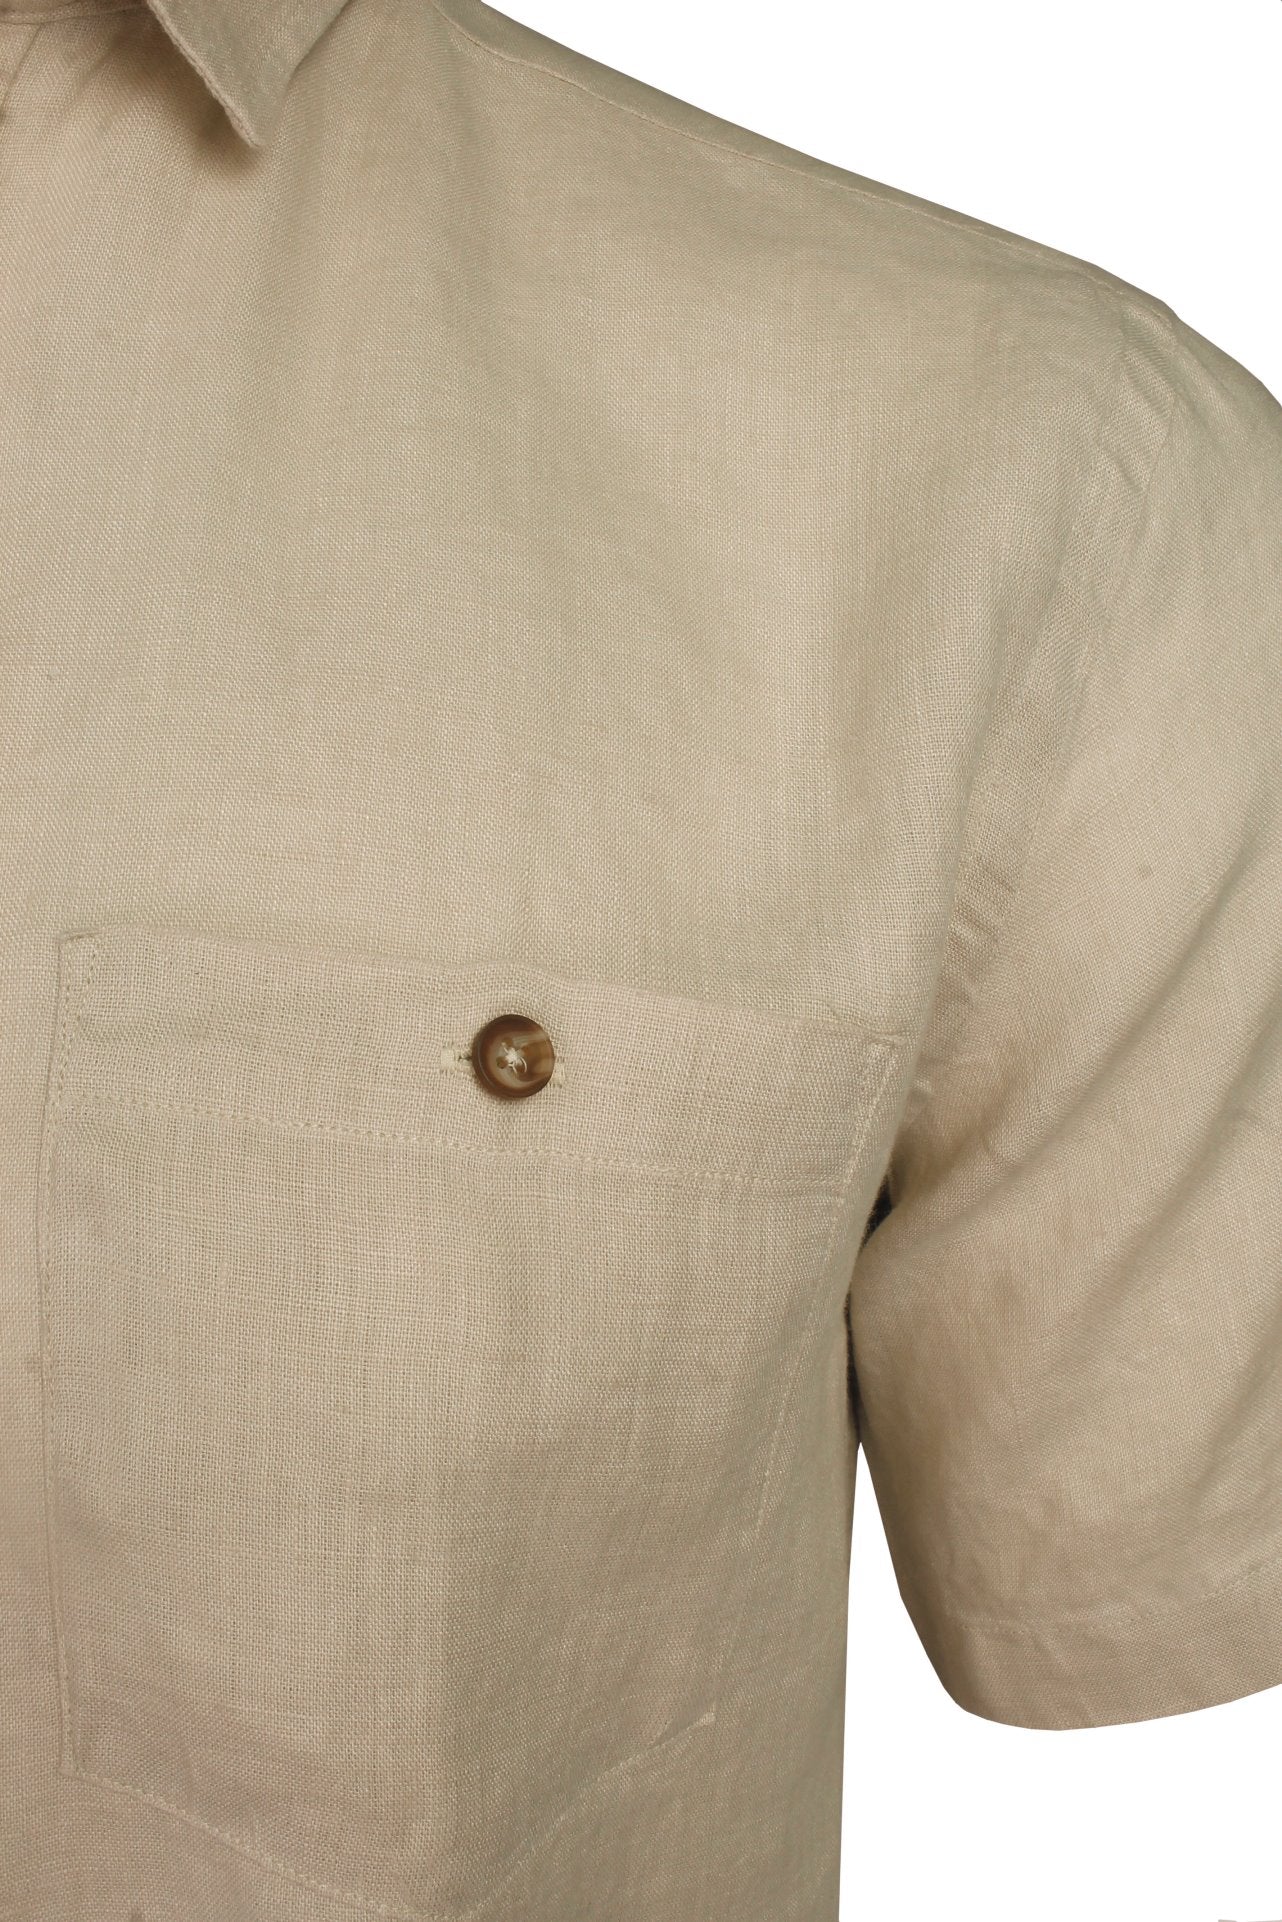 Xact Mens 100% Pure Linen Shirt - Short Sleeved - Regular Fit-2